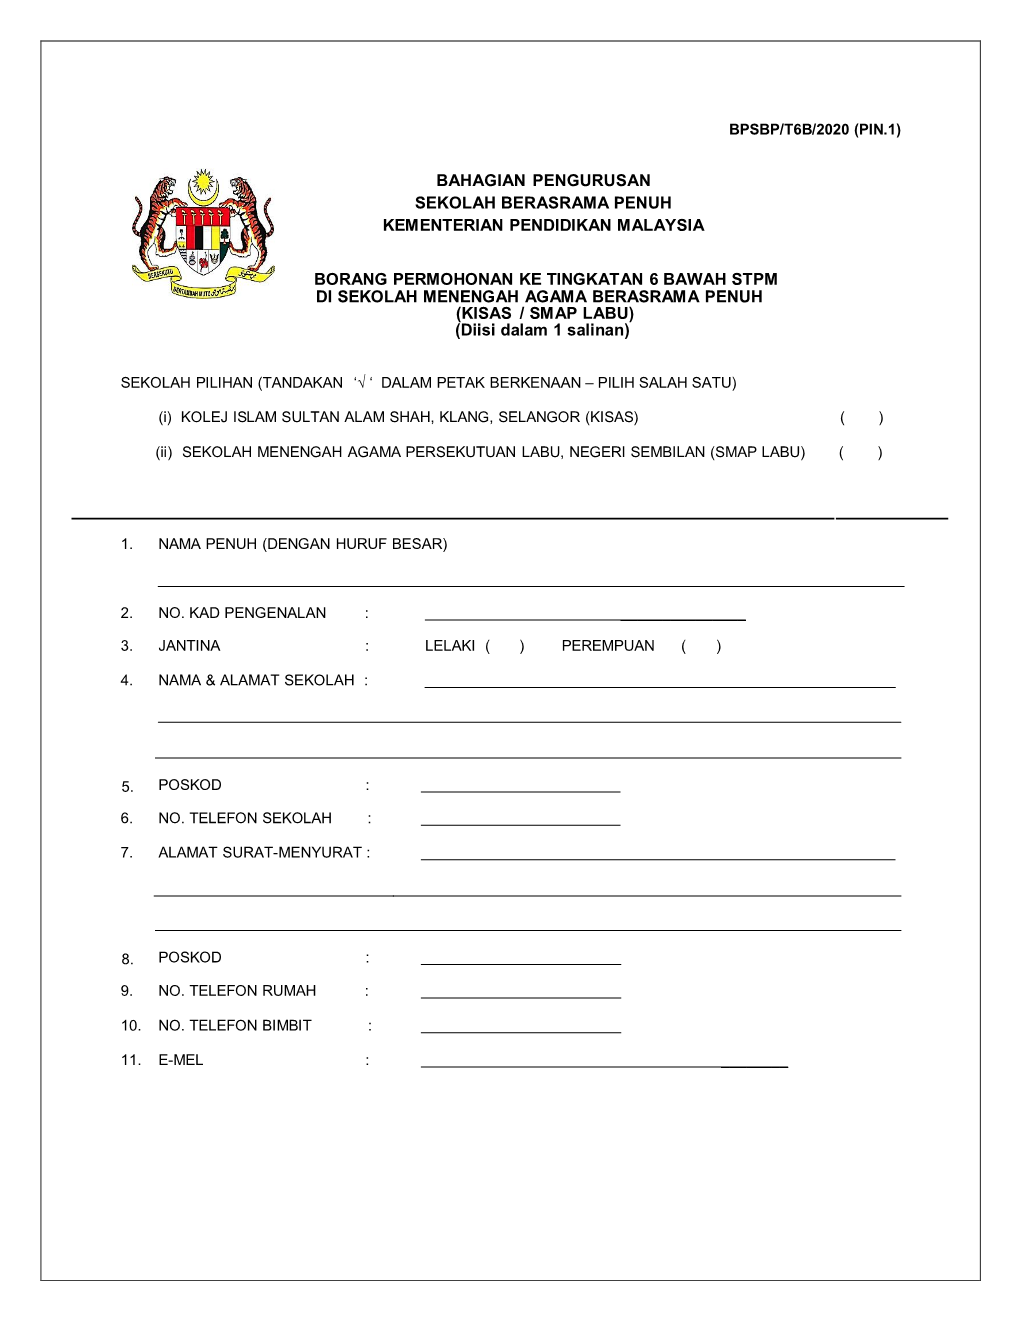 Bahagian Pengurusan Sekolah Berasrama Penuh Kementerian Pendidikan Malaysia